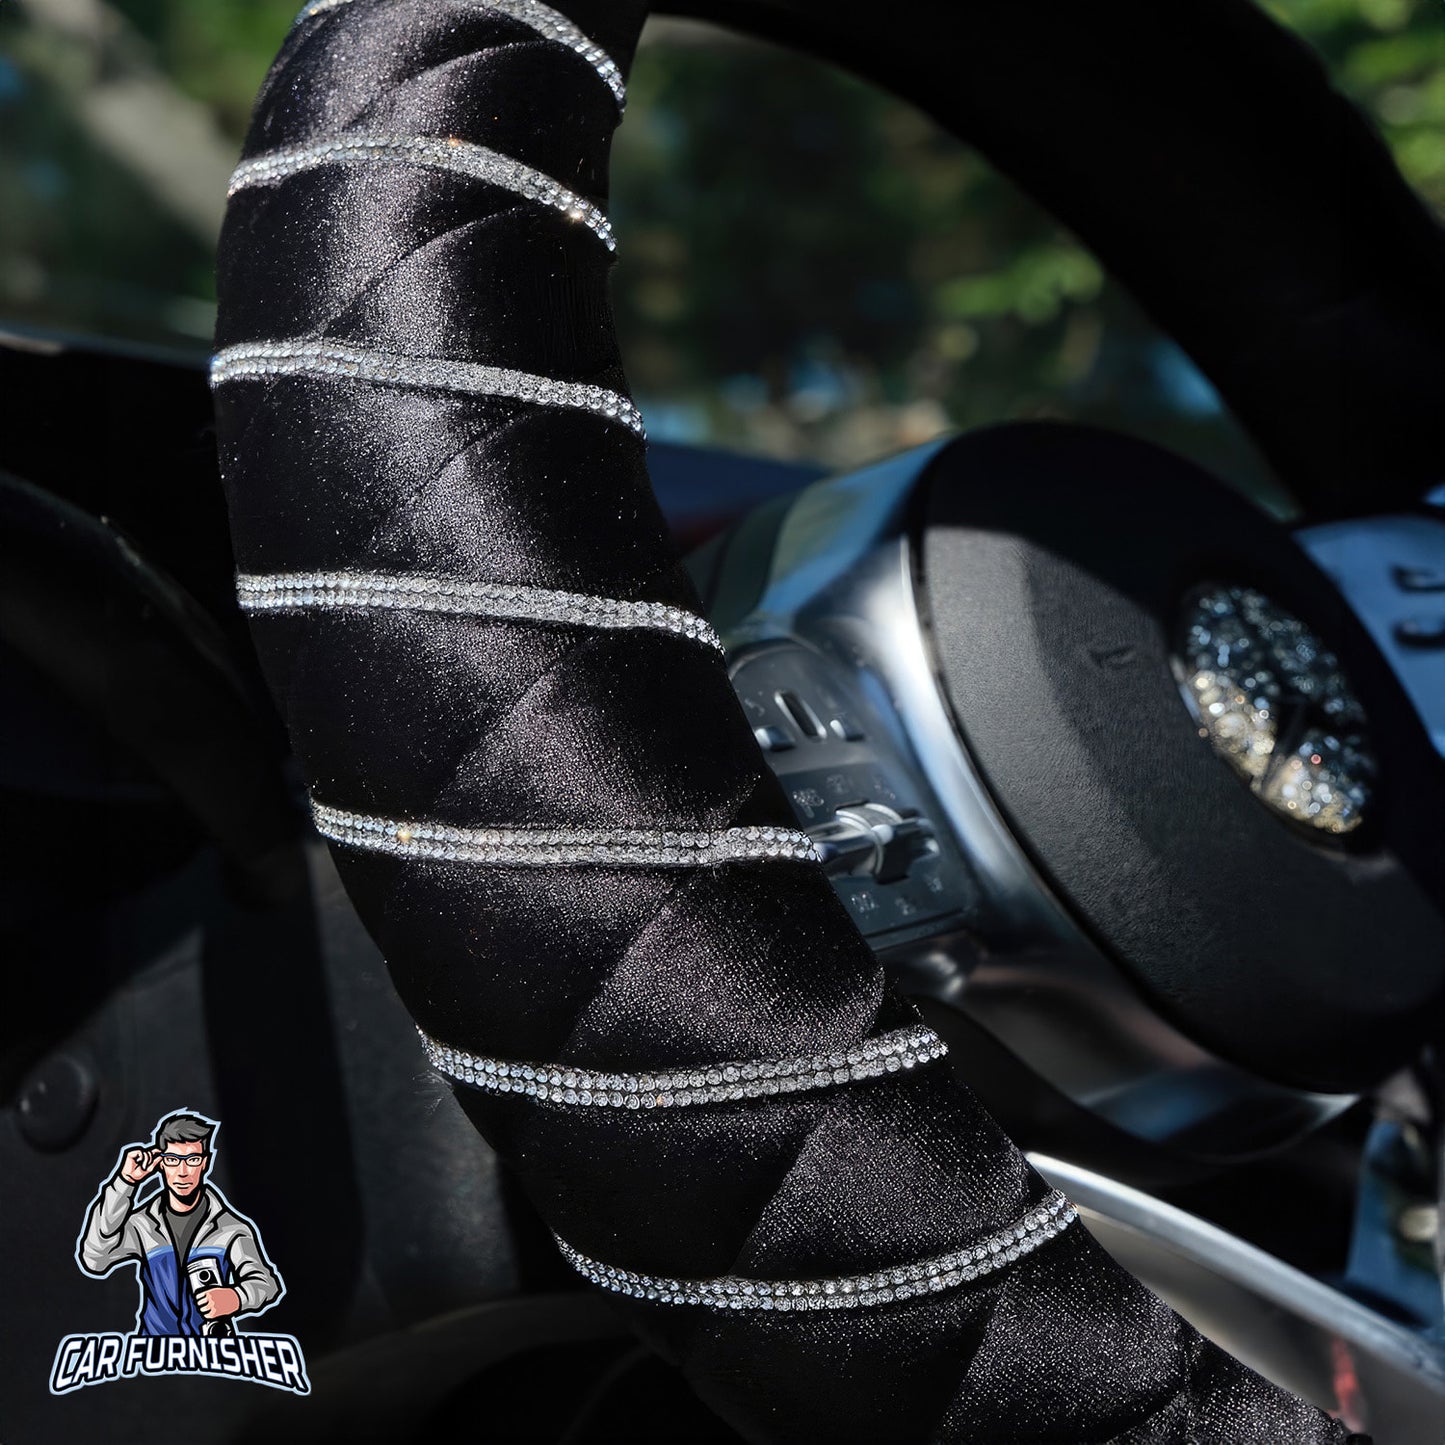 Quilted Velvet Bling Steering Wheel Cover Silver Swarovski Stones Black Fabric